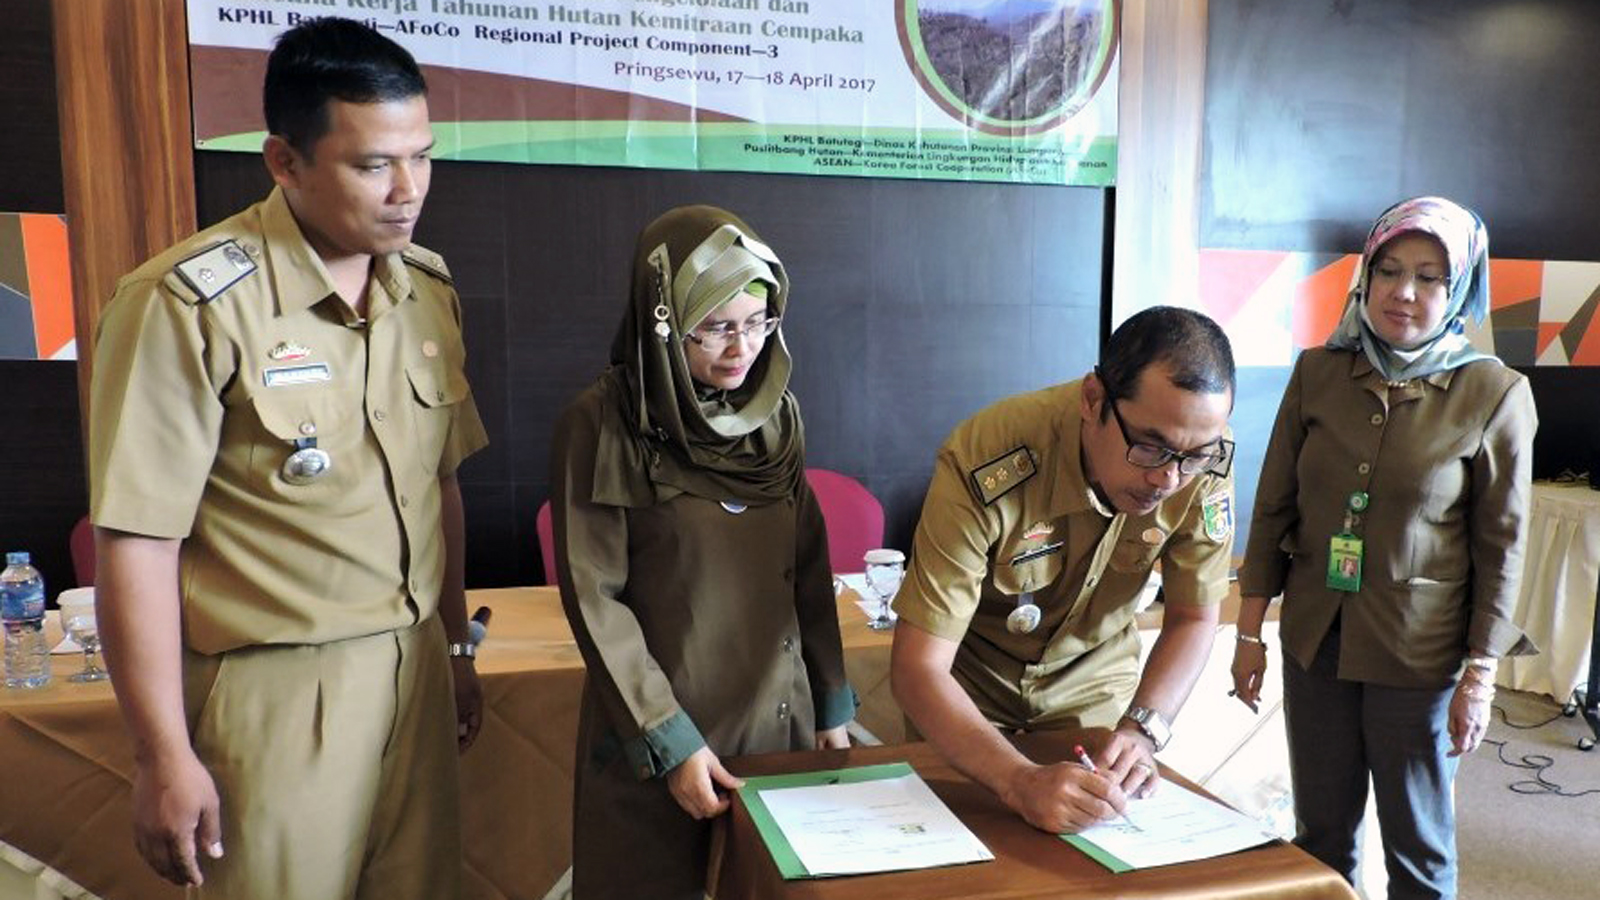 Penandatangan MoU antara AFoCo Coordinator Project (Dona Octavia) dan Kepala KPH Batutegi (Y Ruchyansah) disaksikan oleh Kapuslitbanghut Kementerian LHK dan Dinas Kehutanan Provinsi Lampung. (Ist)